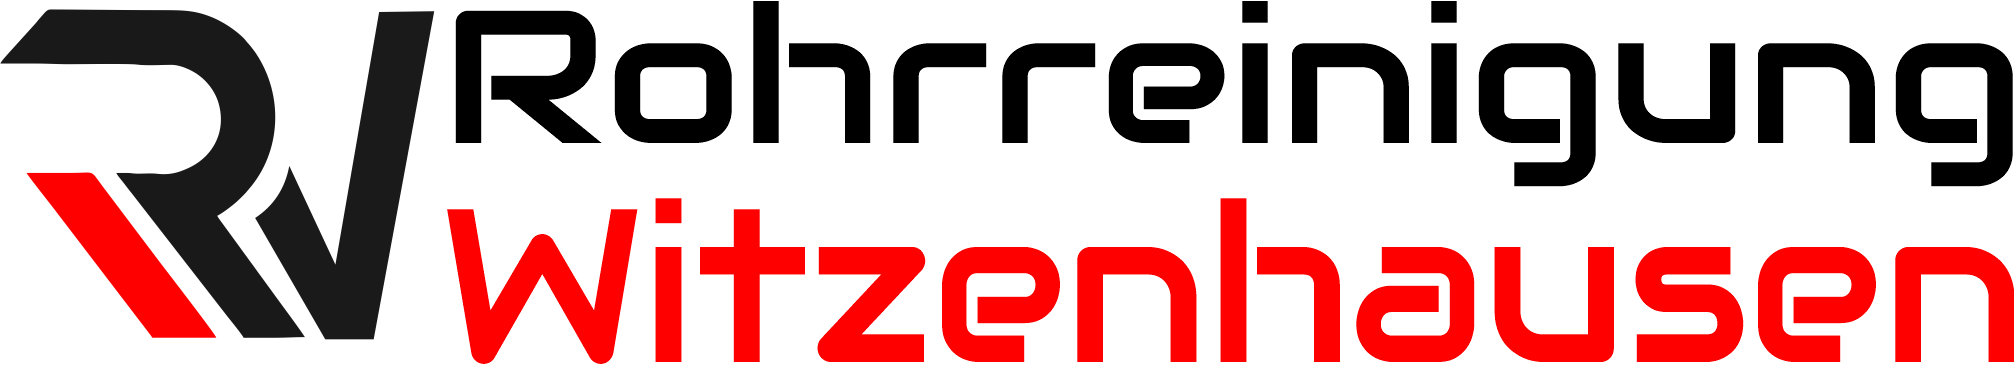 Rohrreinigung Witzenhausen Logo